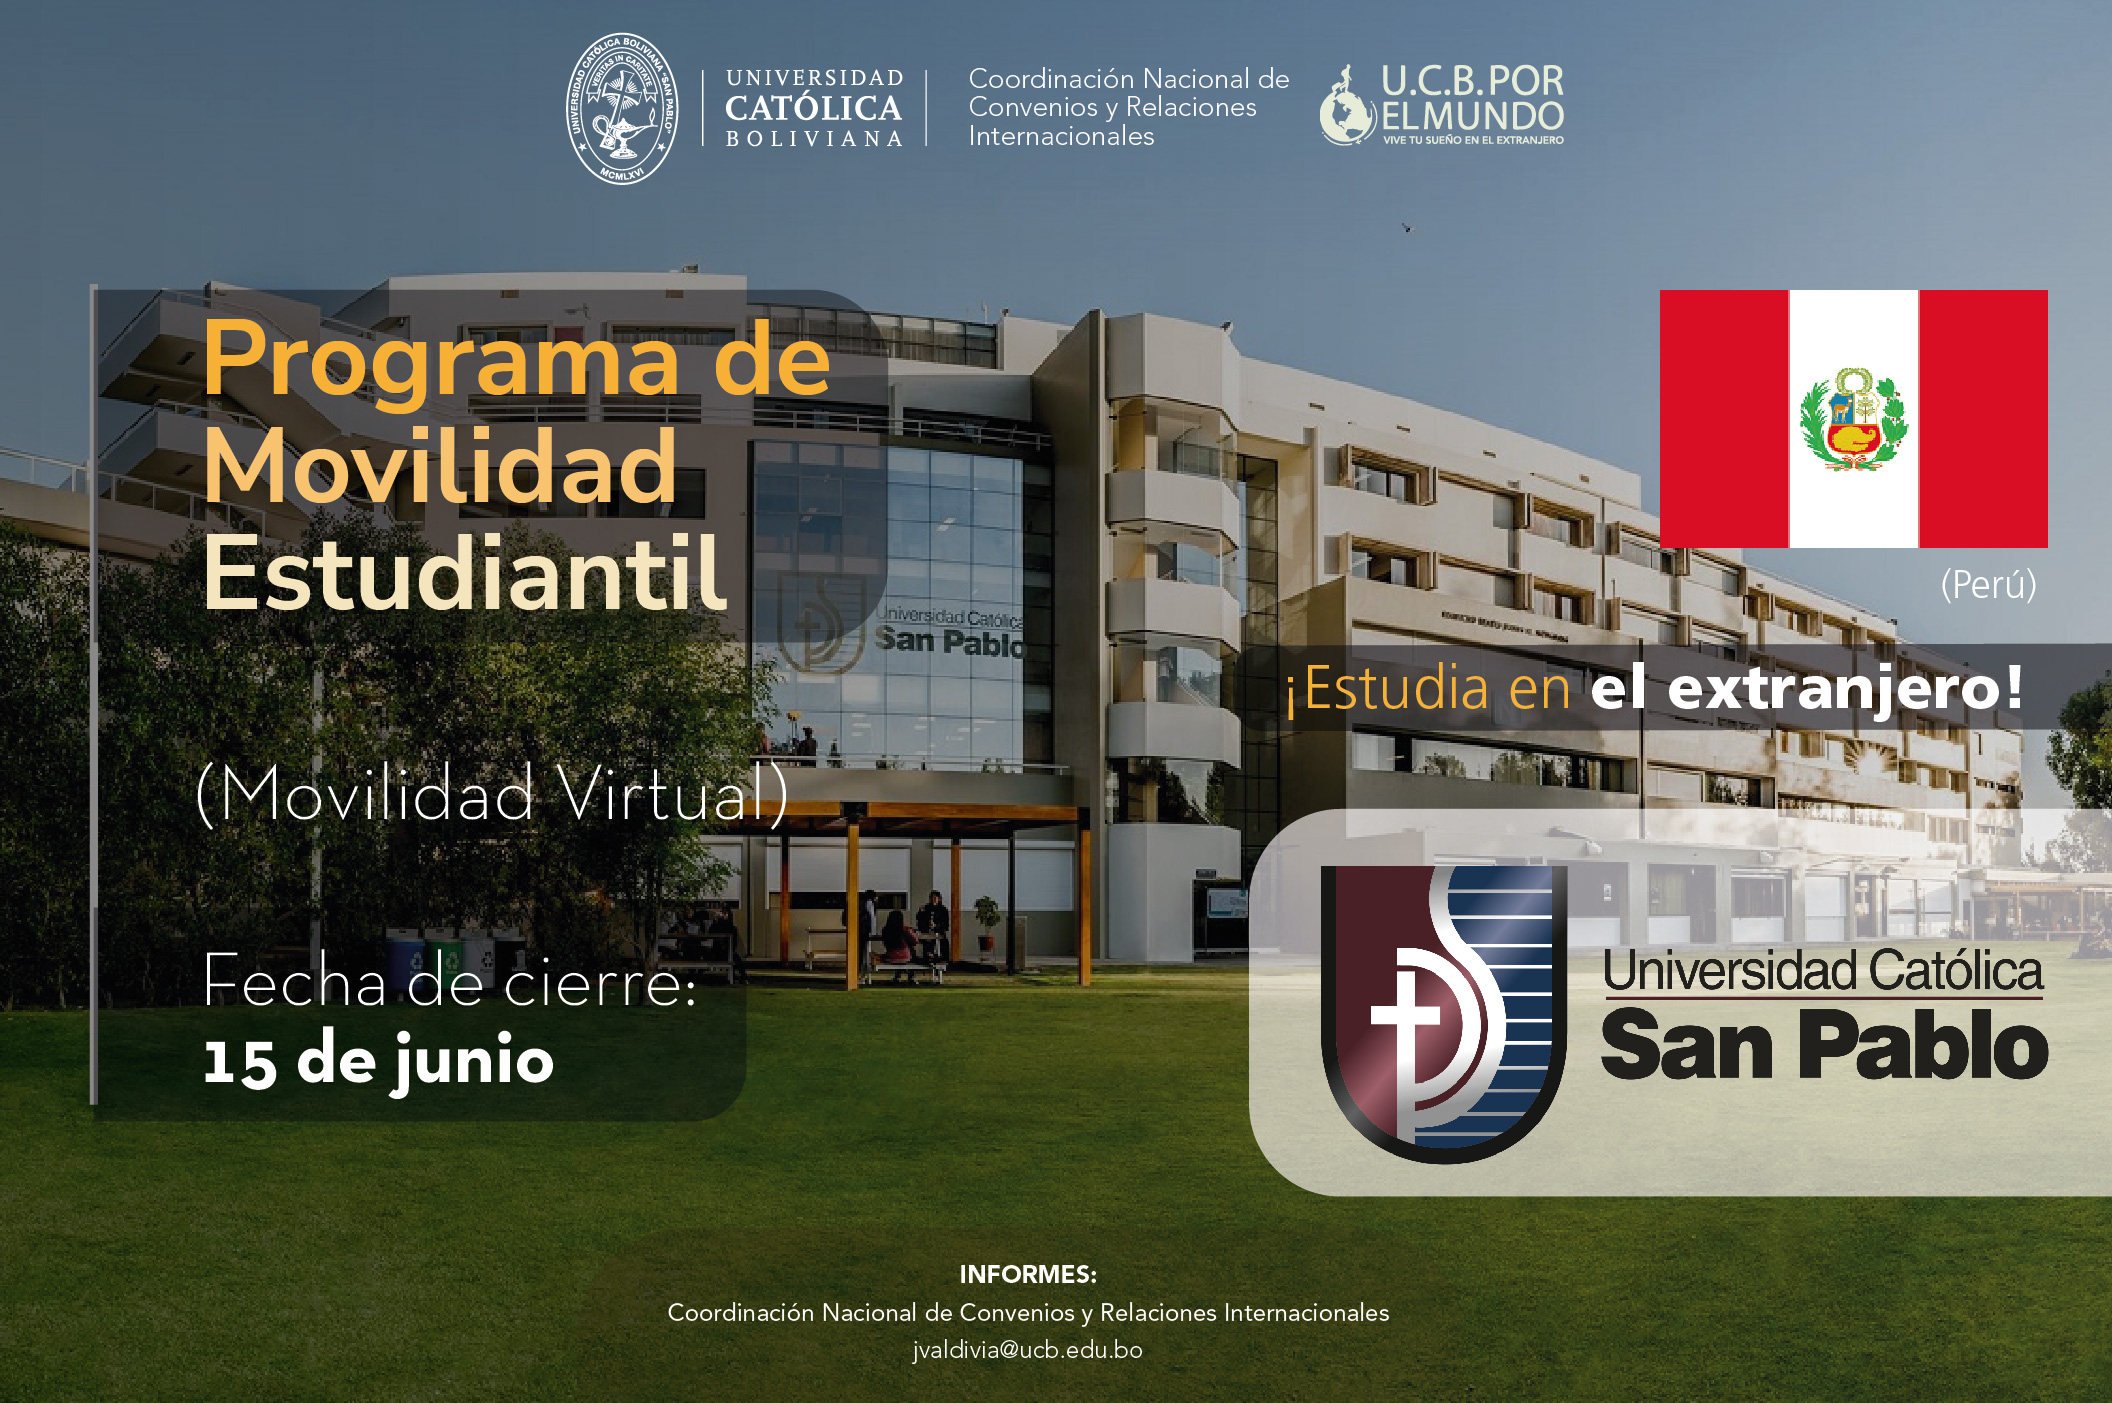 El Programa de Movilidad Estudiantil UCB por el Mundo cuenta con cupos en la Universidad Católica San Pablo de Perú.